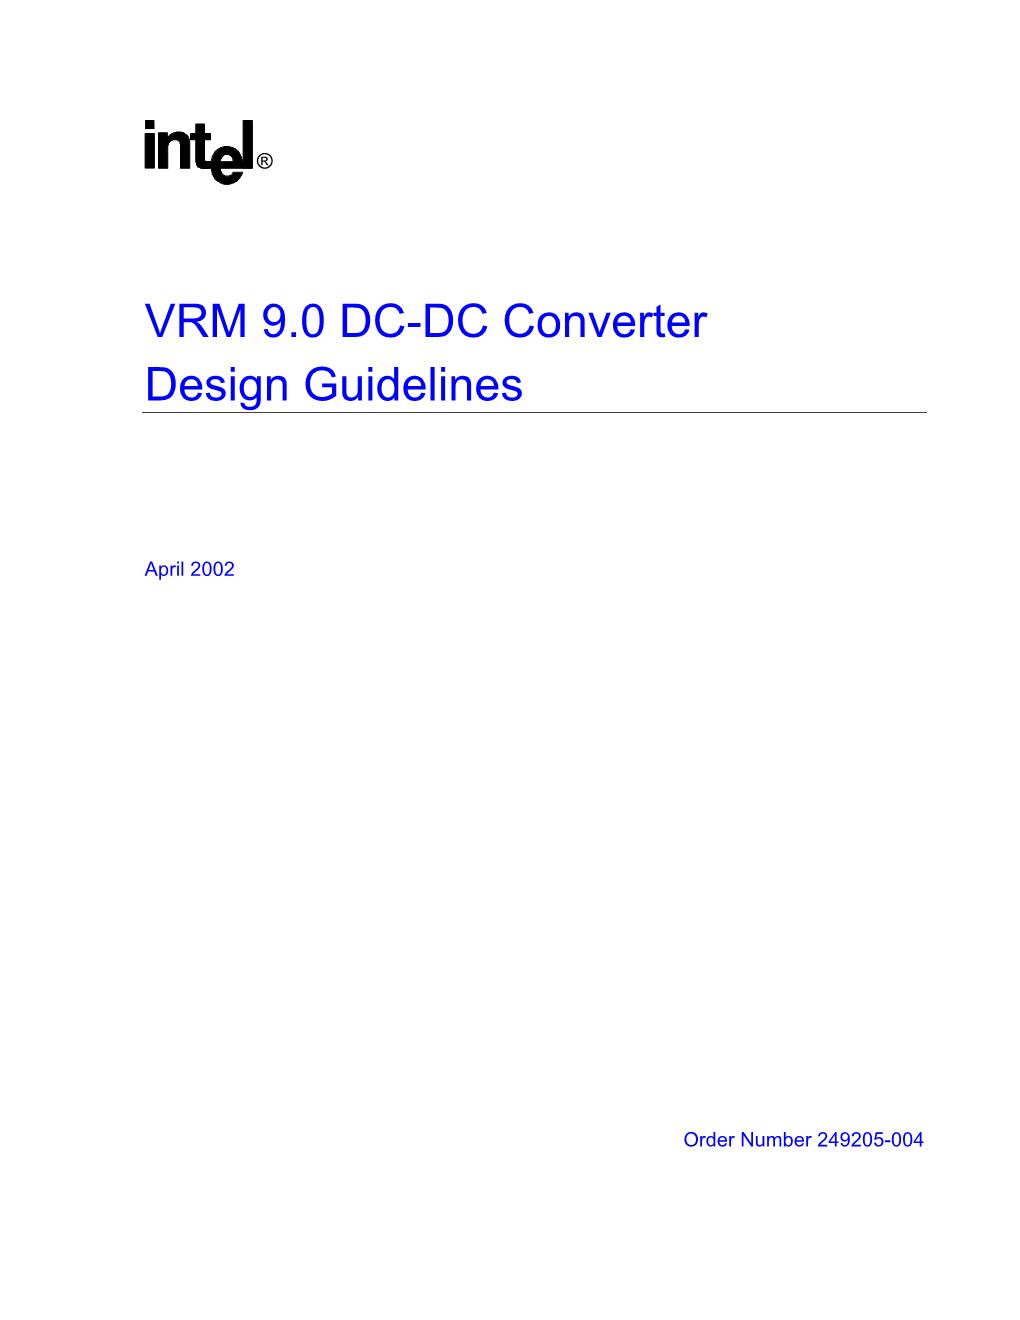 VRM 9.0 DC-DC Converter Design Guidelines